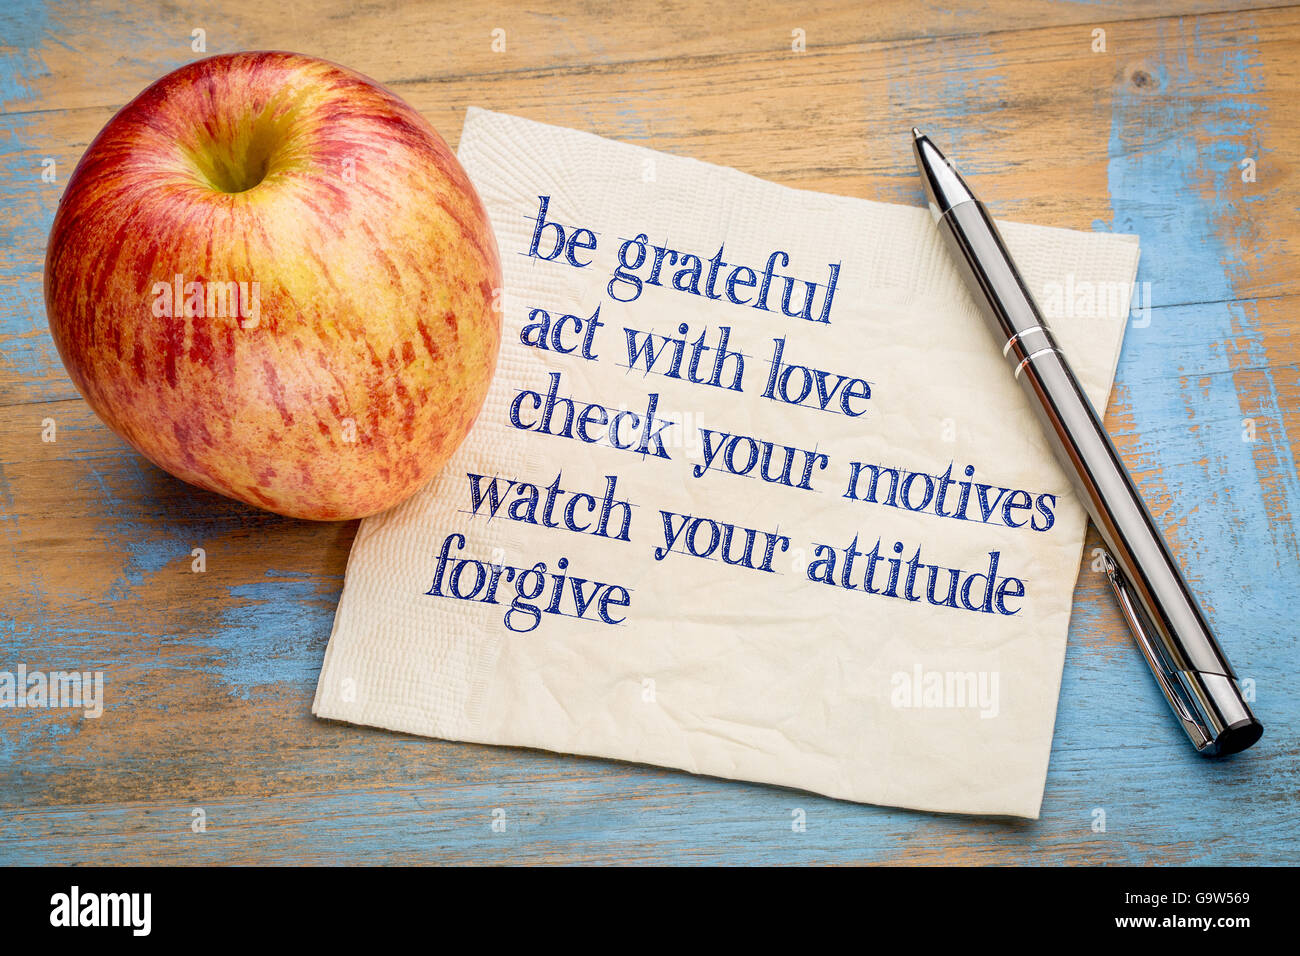 werden Sie dankbar und andere inspirierende Phrasen - Handschrift auf einer Serviette mit einem frischen Apfel Stockfoto